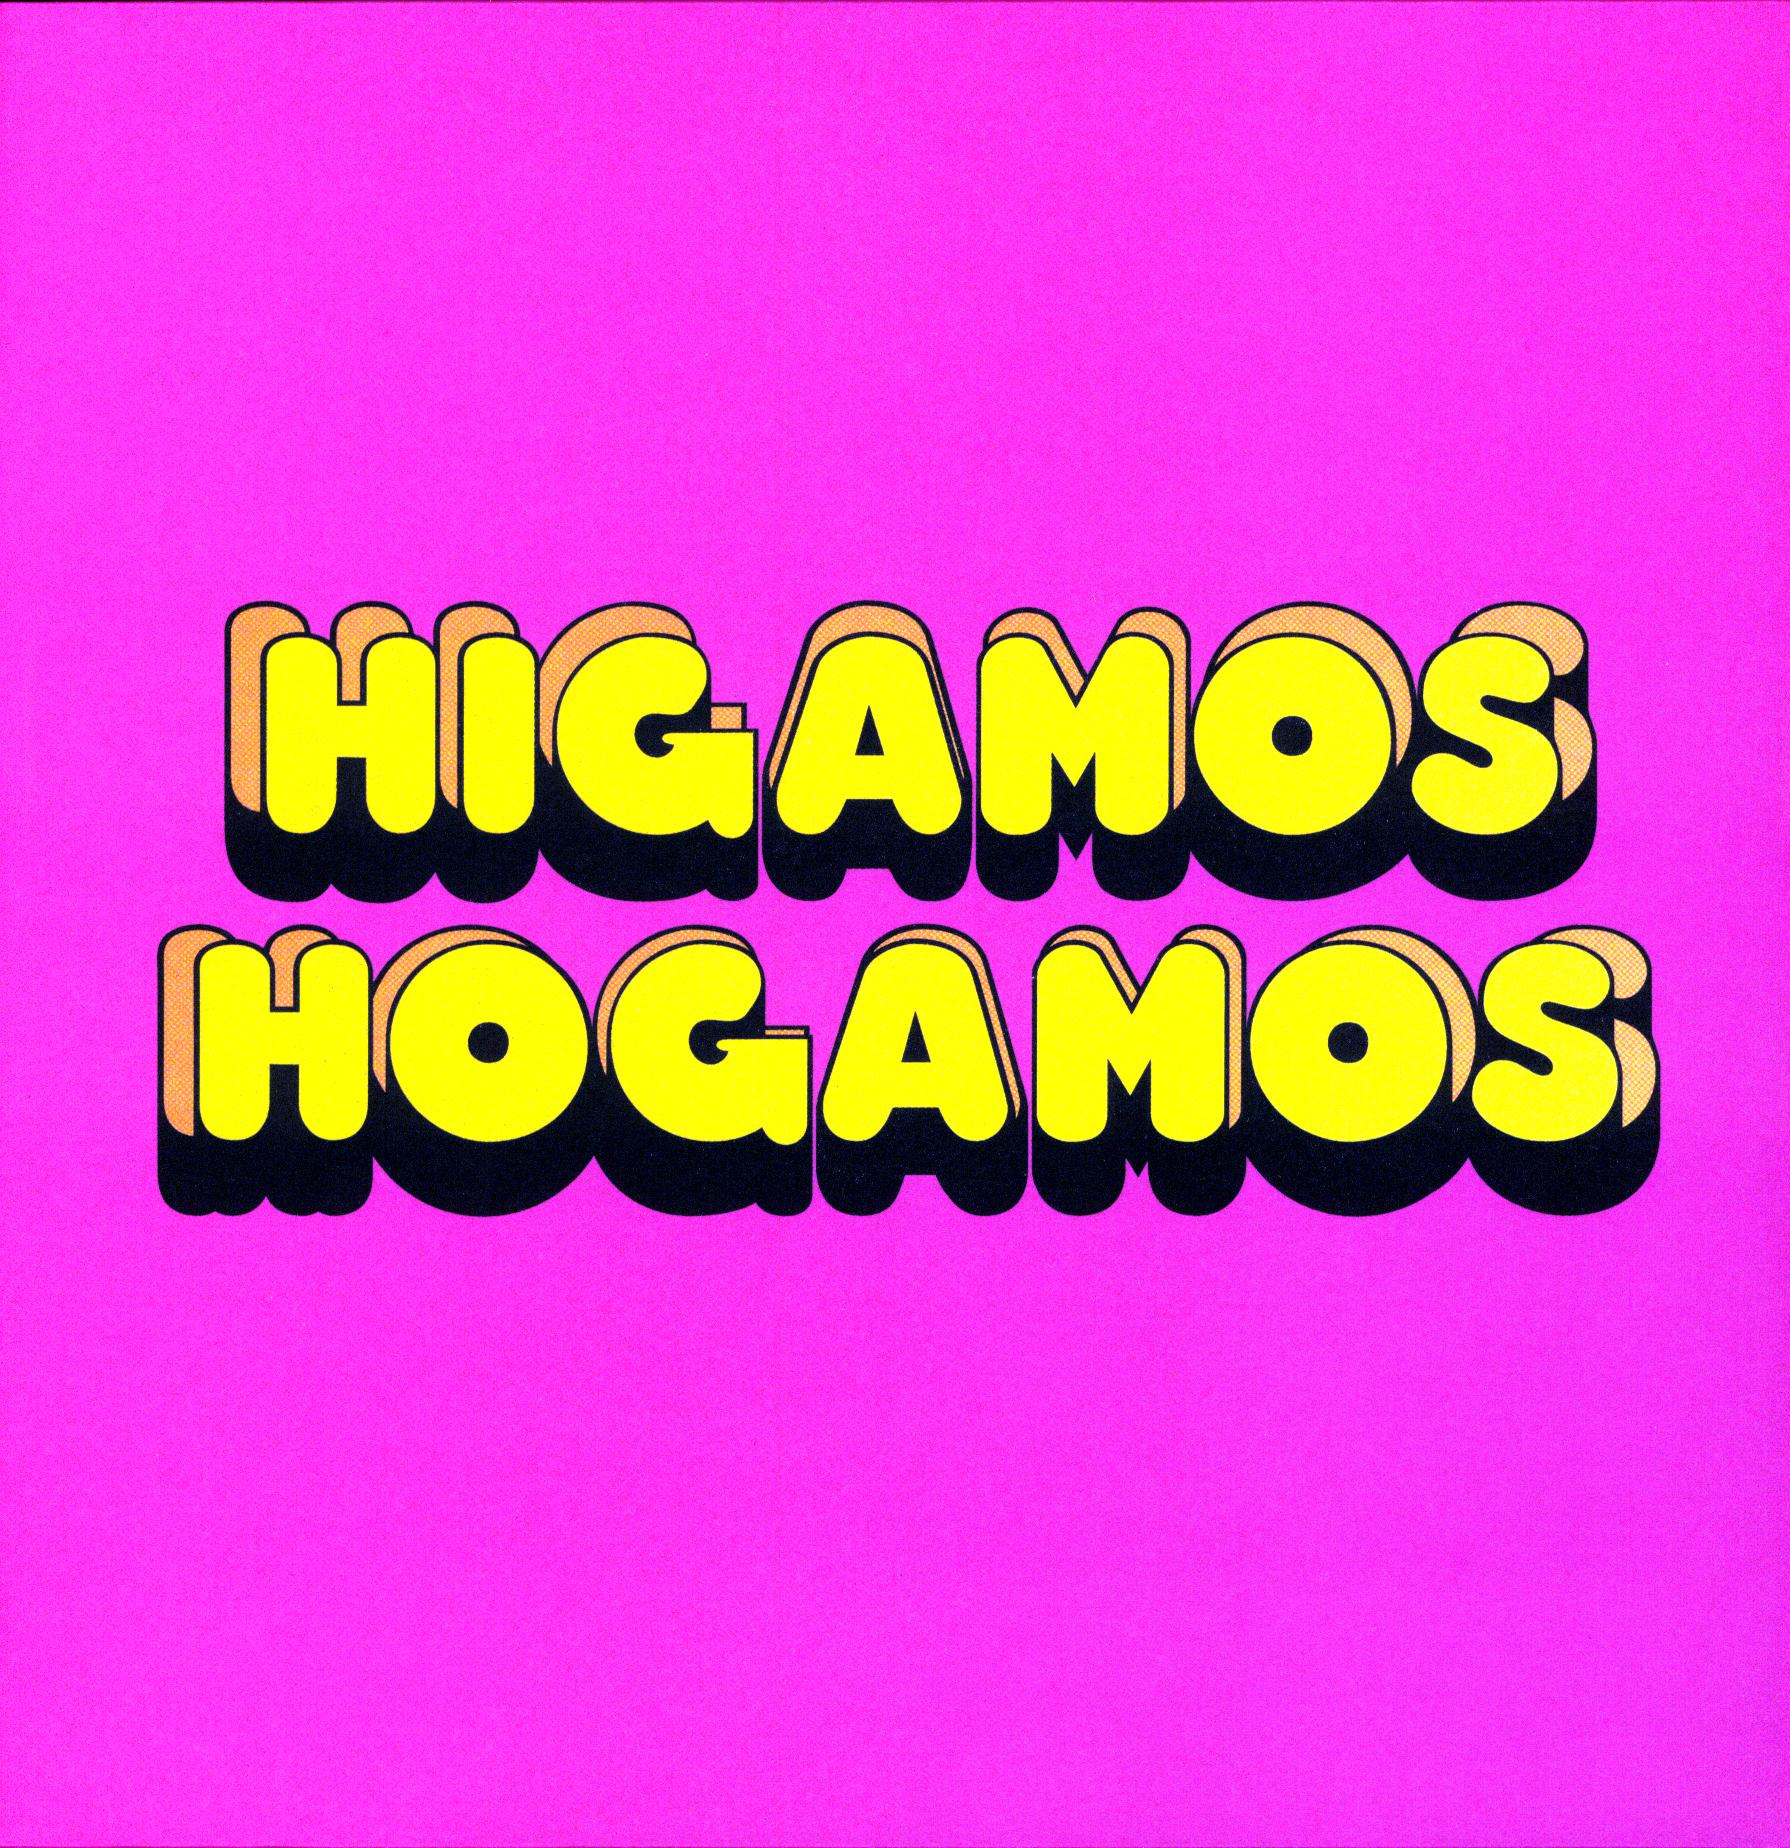 HIGAMOS HOGAMOS